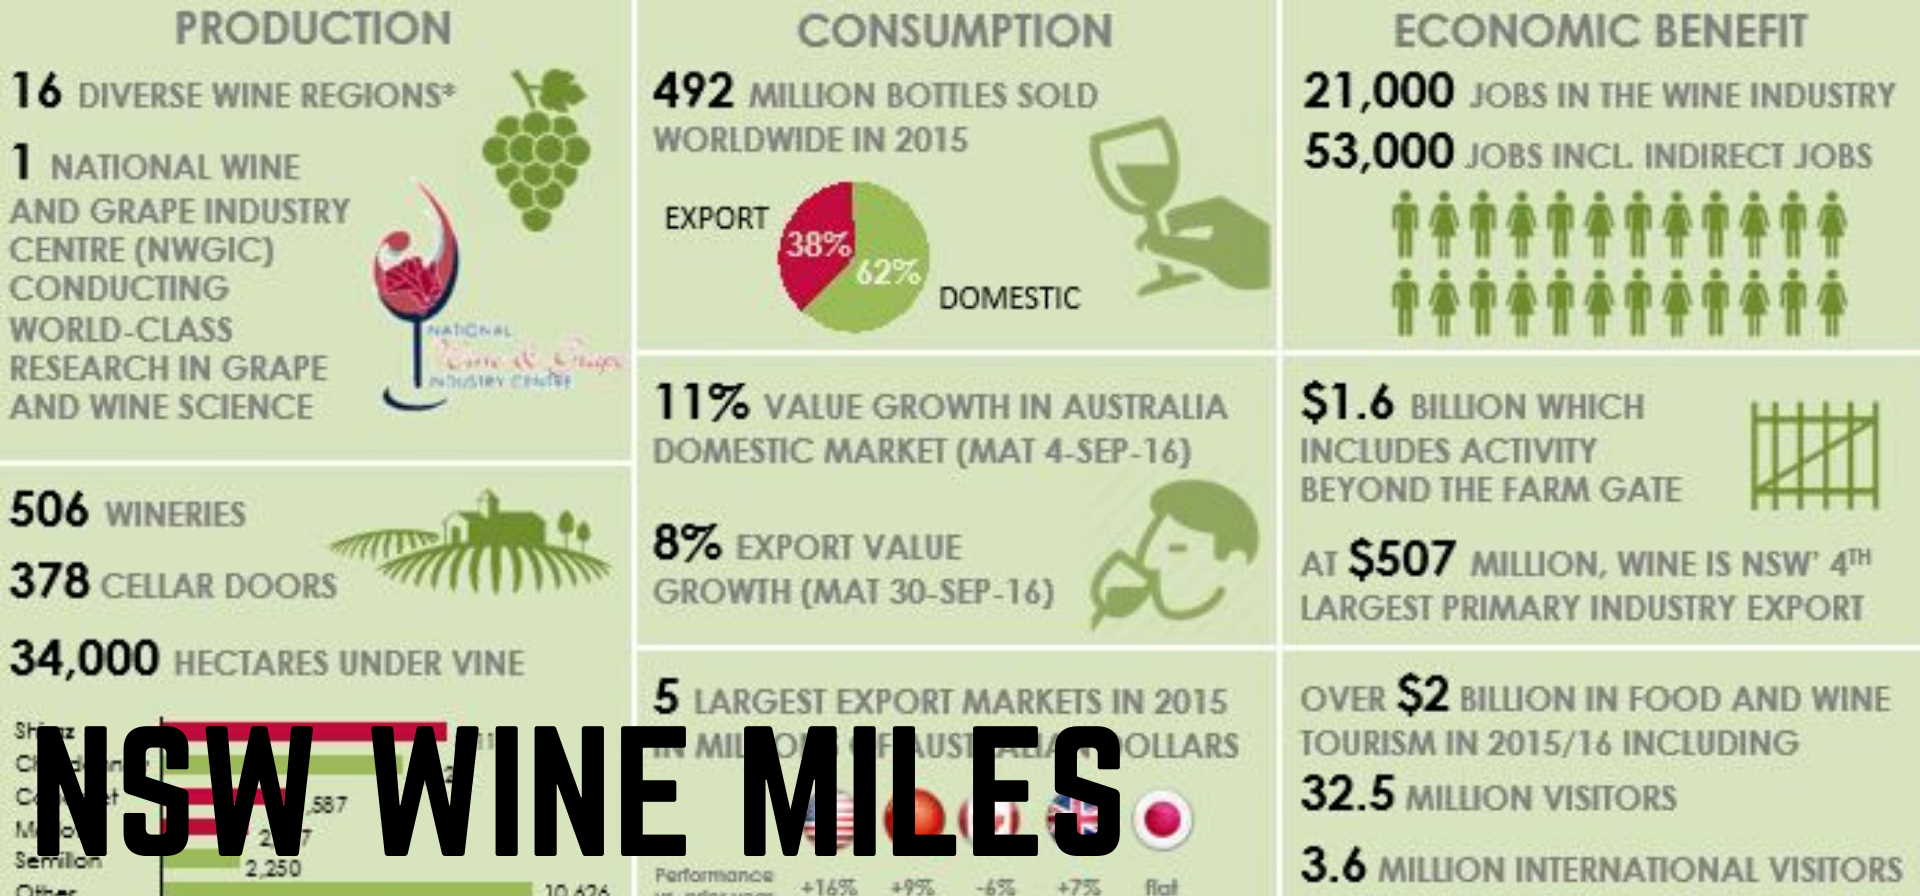 NSW Wine Miles